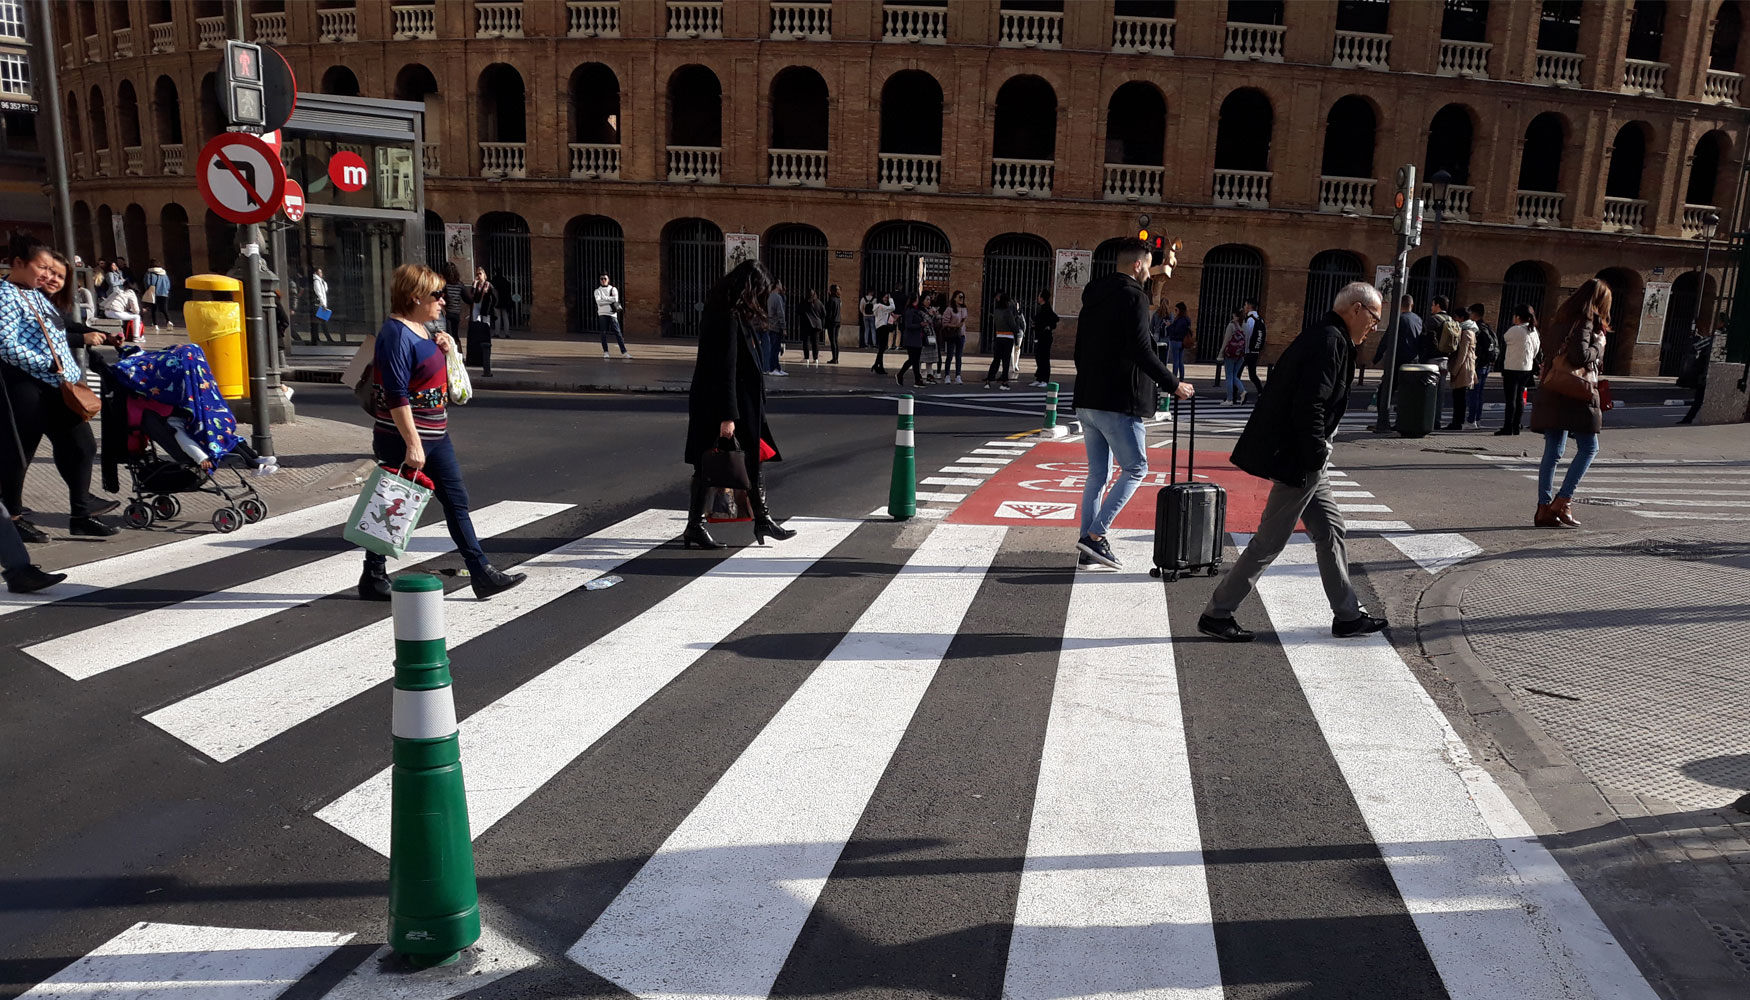 Paso de peatones al inicio del carril bici de la calle Alicante en Valencia. Foto: pacopac